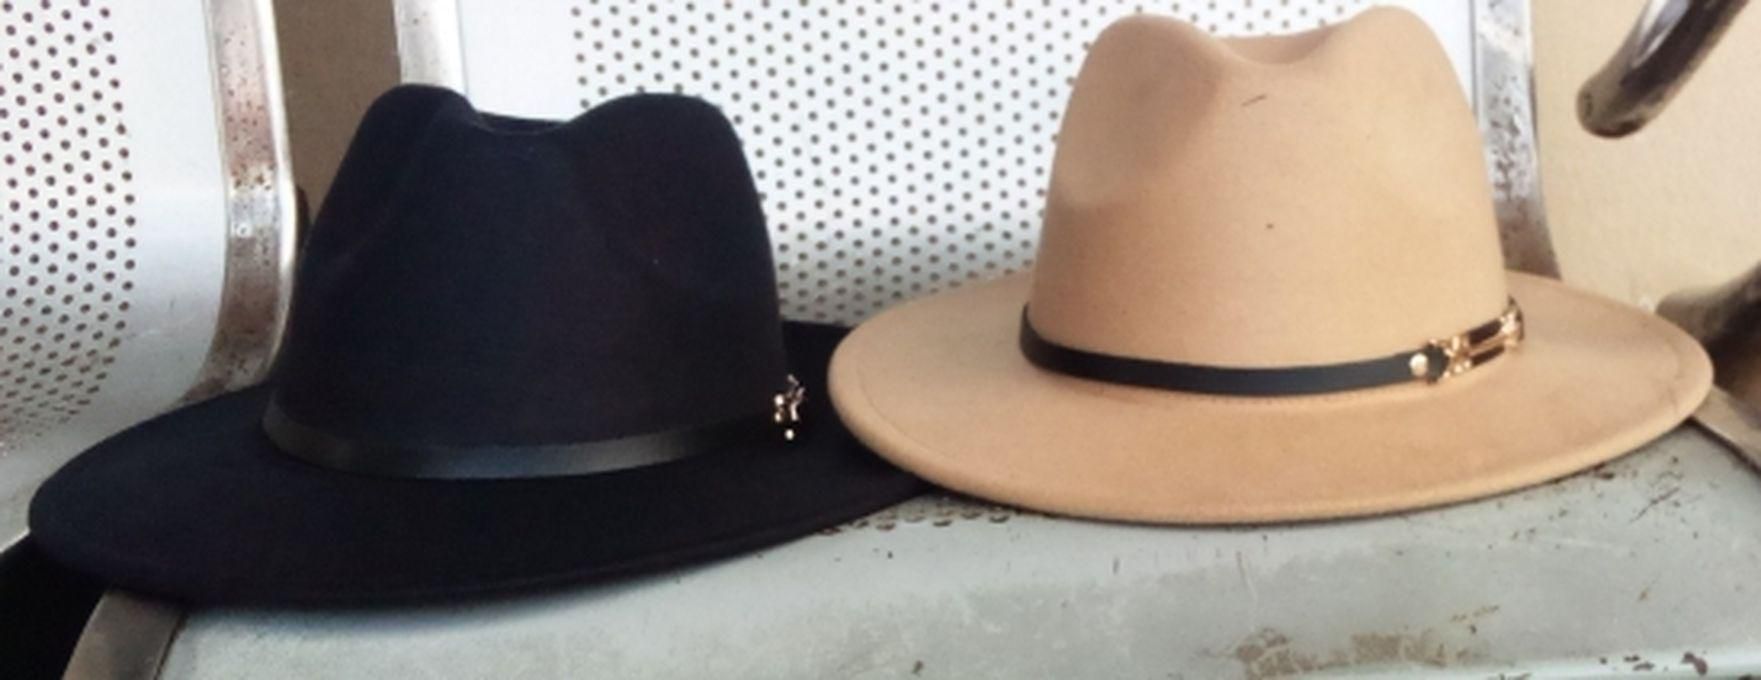 Premium Men's Hat -Black & Cream 2 In 1 Fedora -